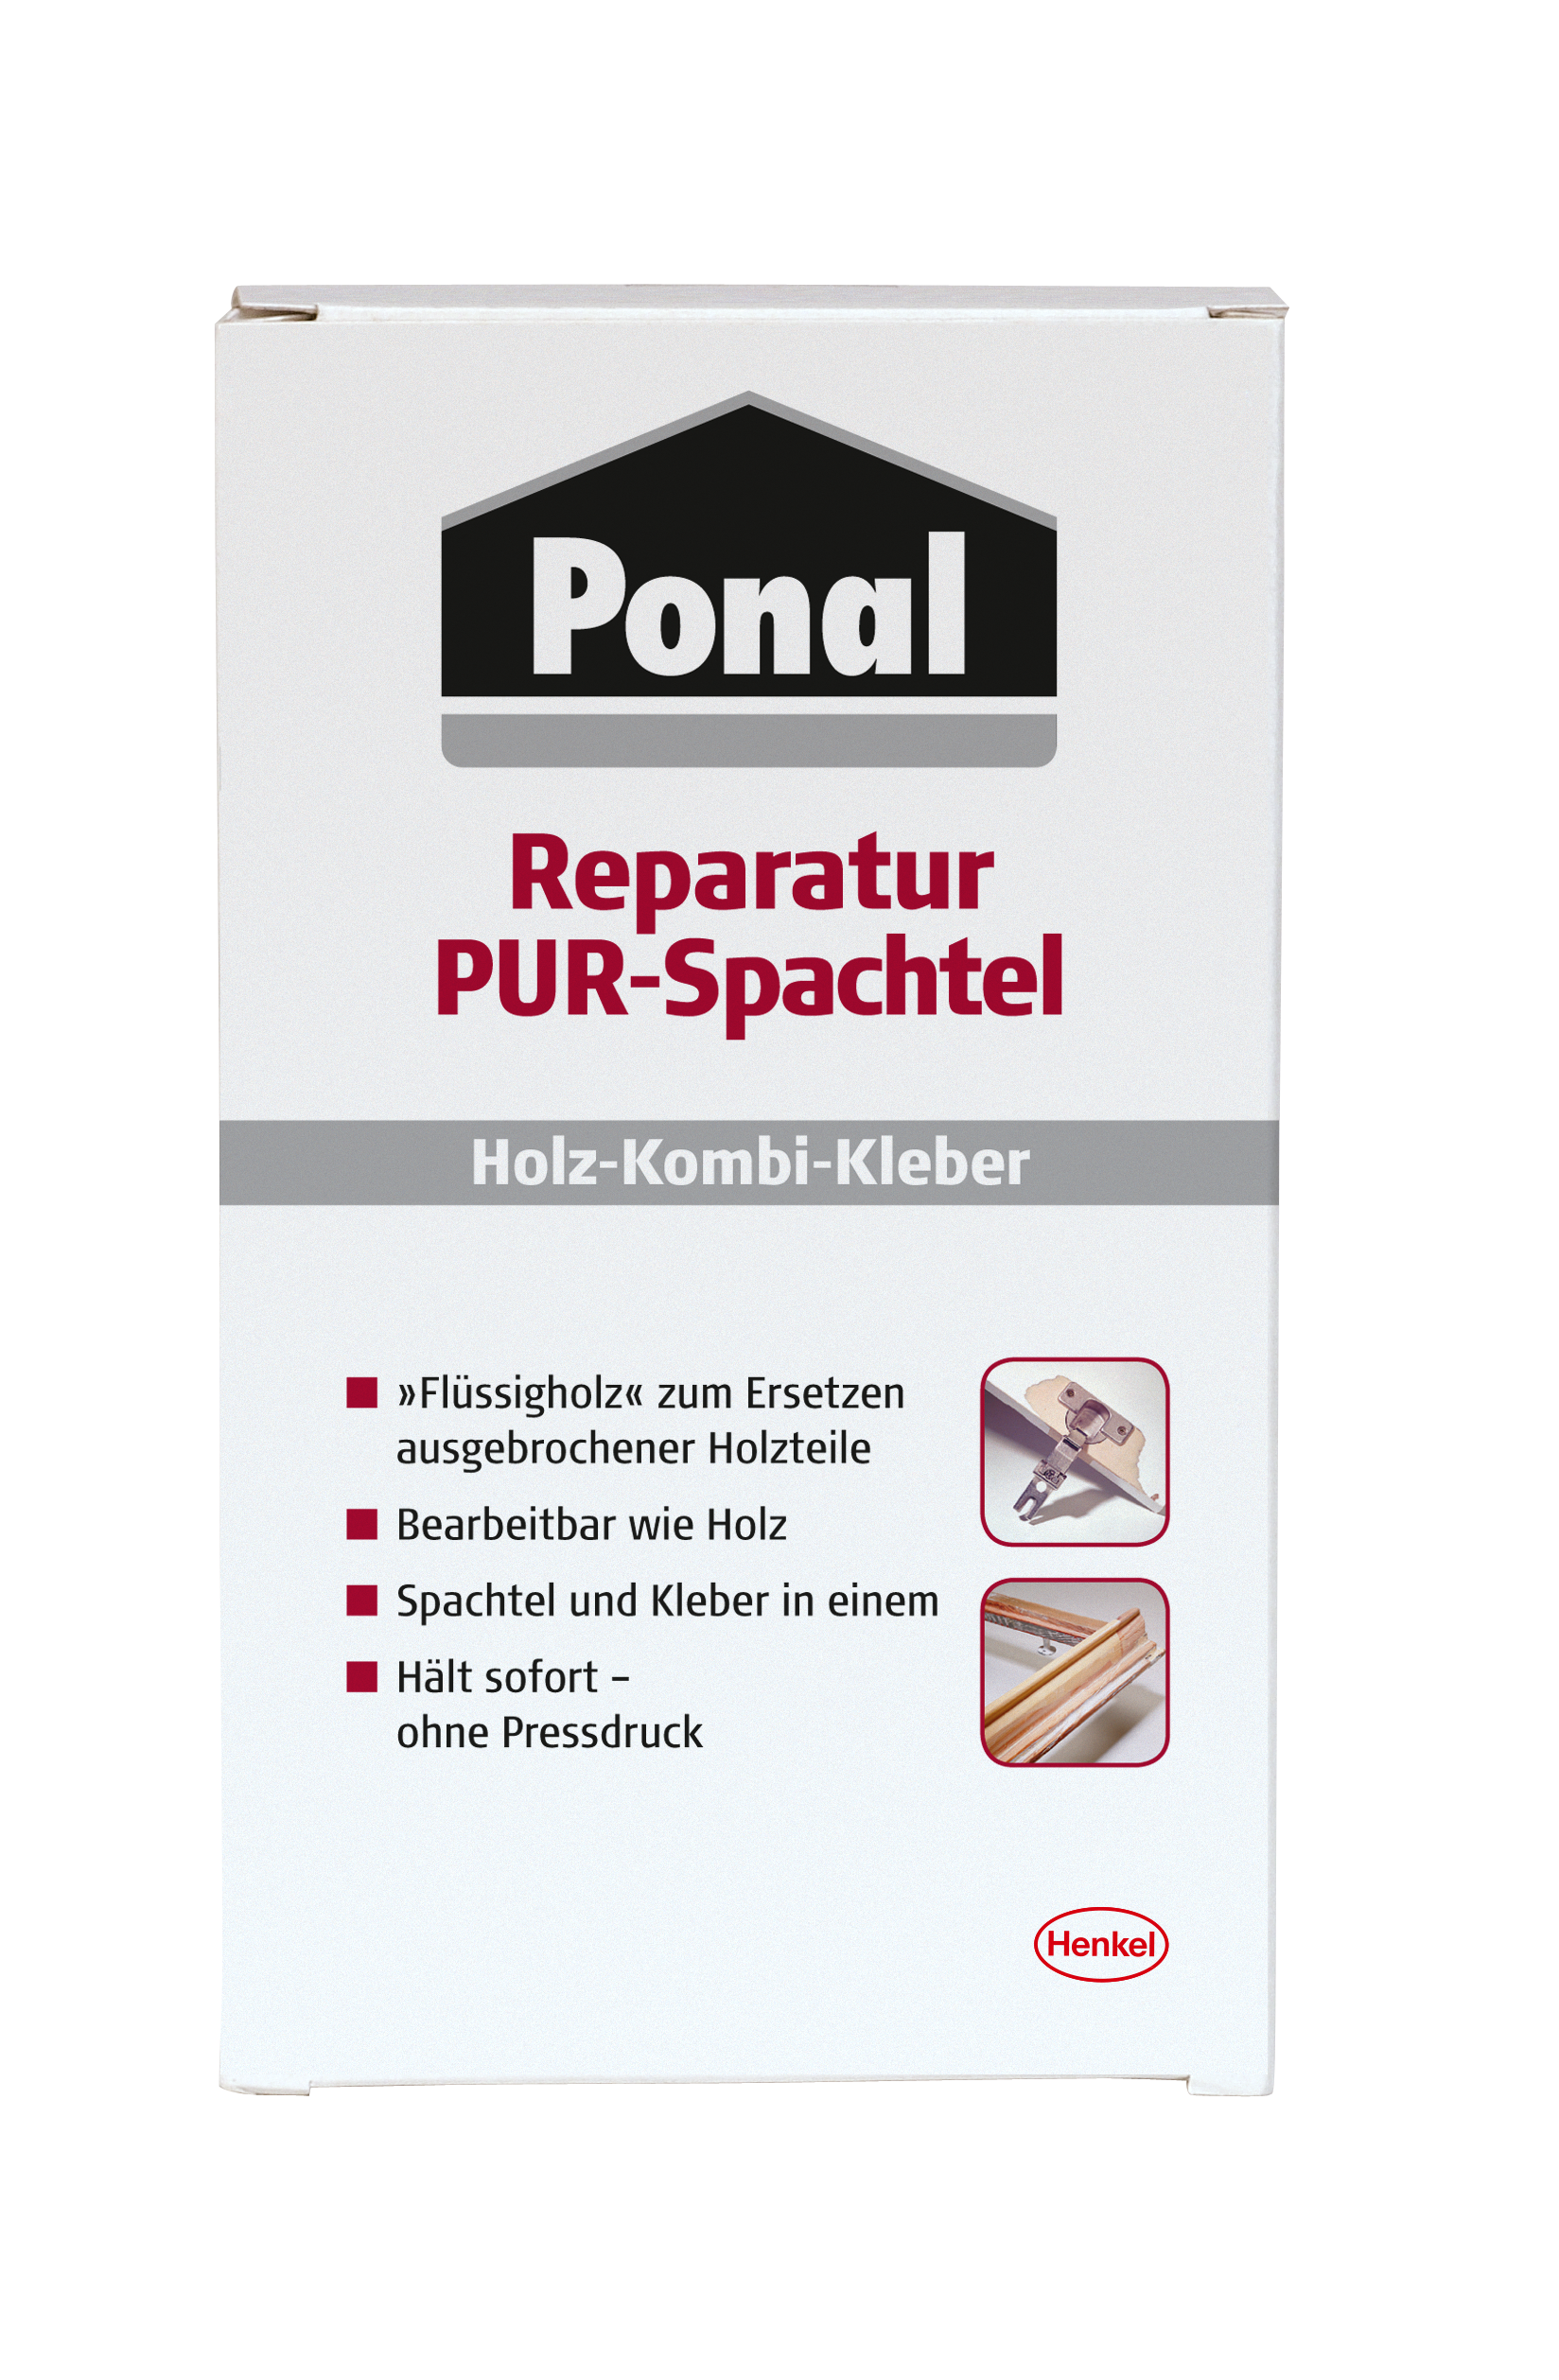 Ponal Reparatur PUR-Spachtel